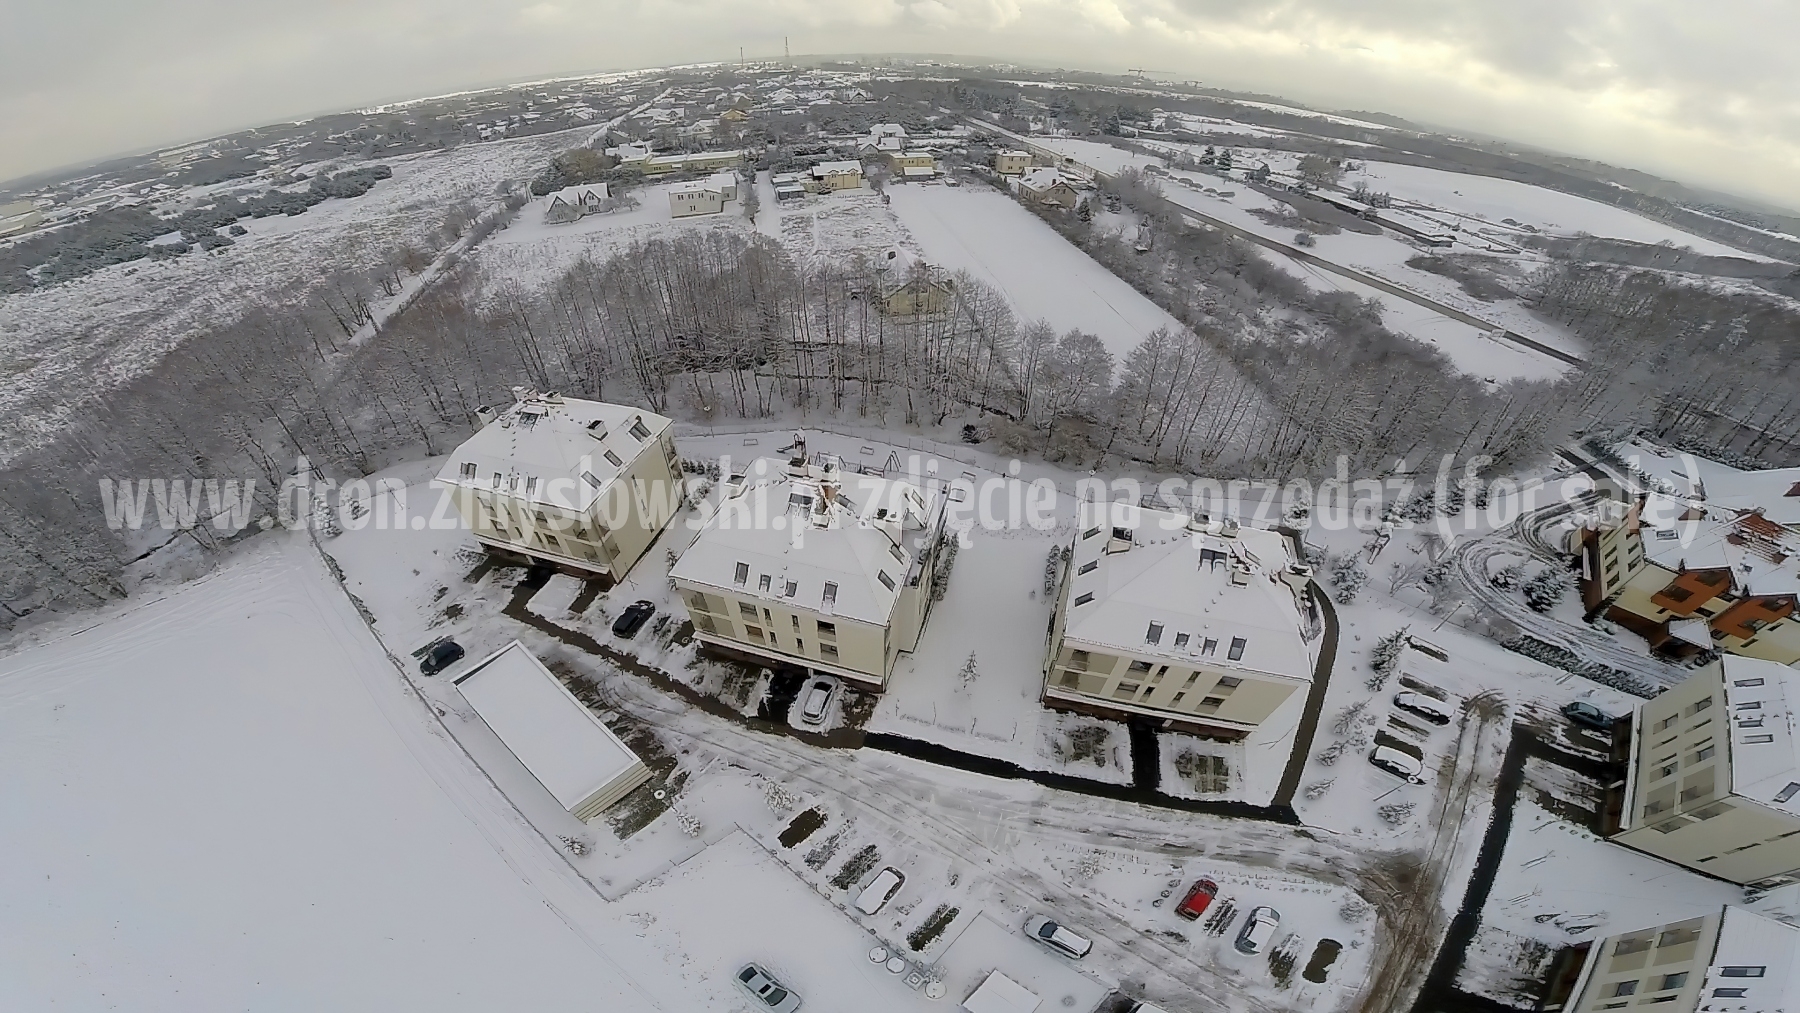 2015-02-04-dron-w-Niemczu-na-ul-Elizy-Orzeszkowej-zima-003-gigapixel-standard-width-3840px-SharpenAI-Motion